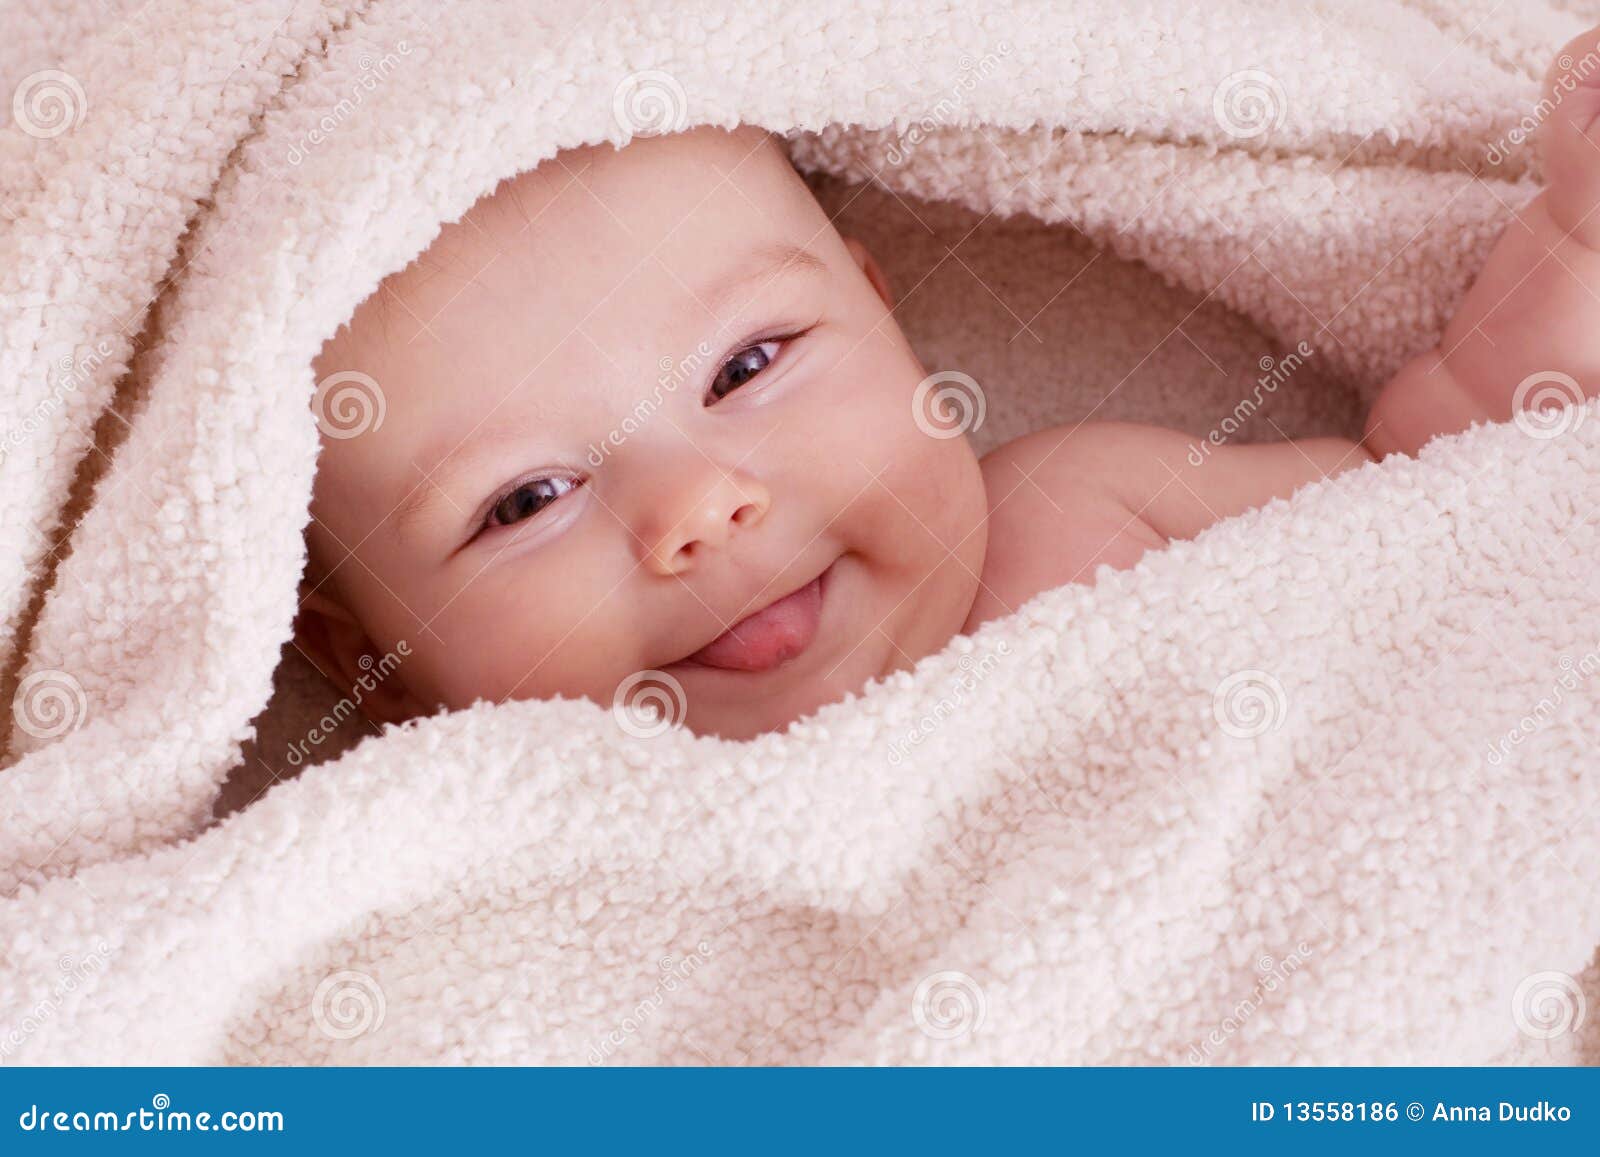 Sweet baby girl stock photo. Image of celebration, infant - 13558186